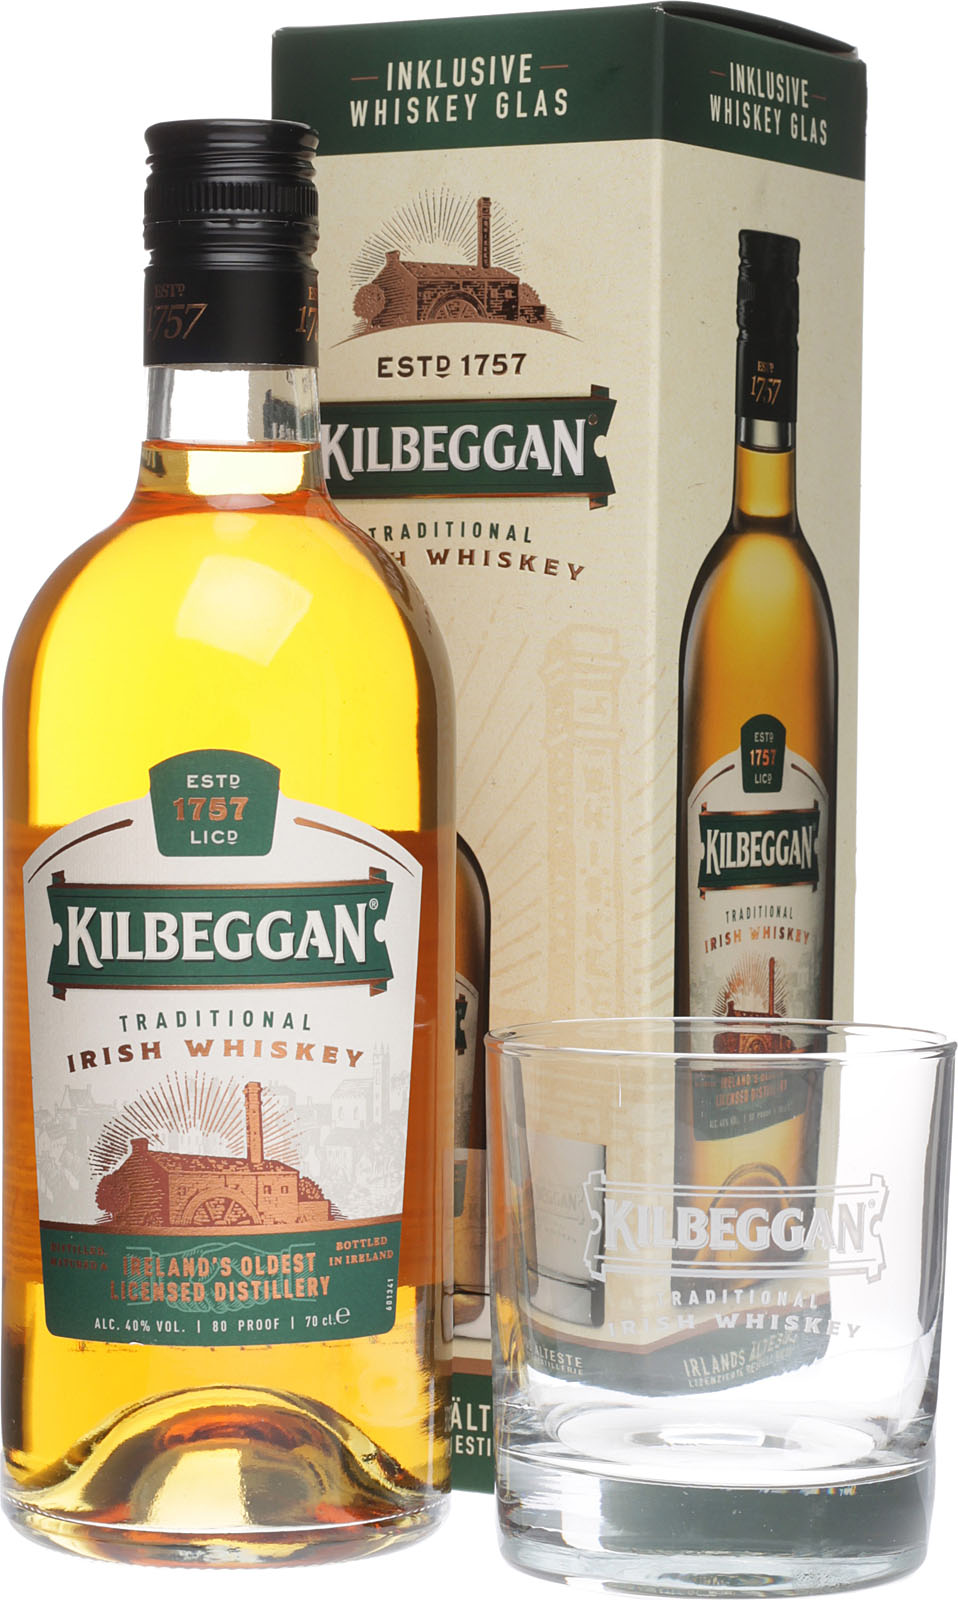 Kilbeggan Traditional Irish Geschenkset im Whisky